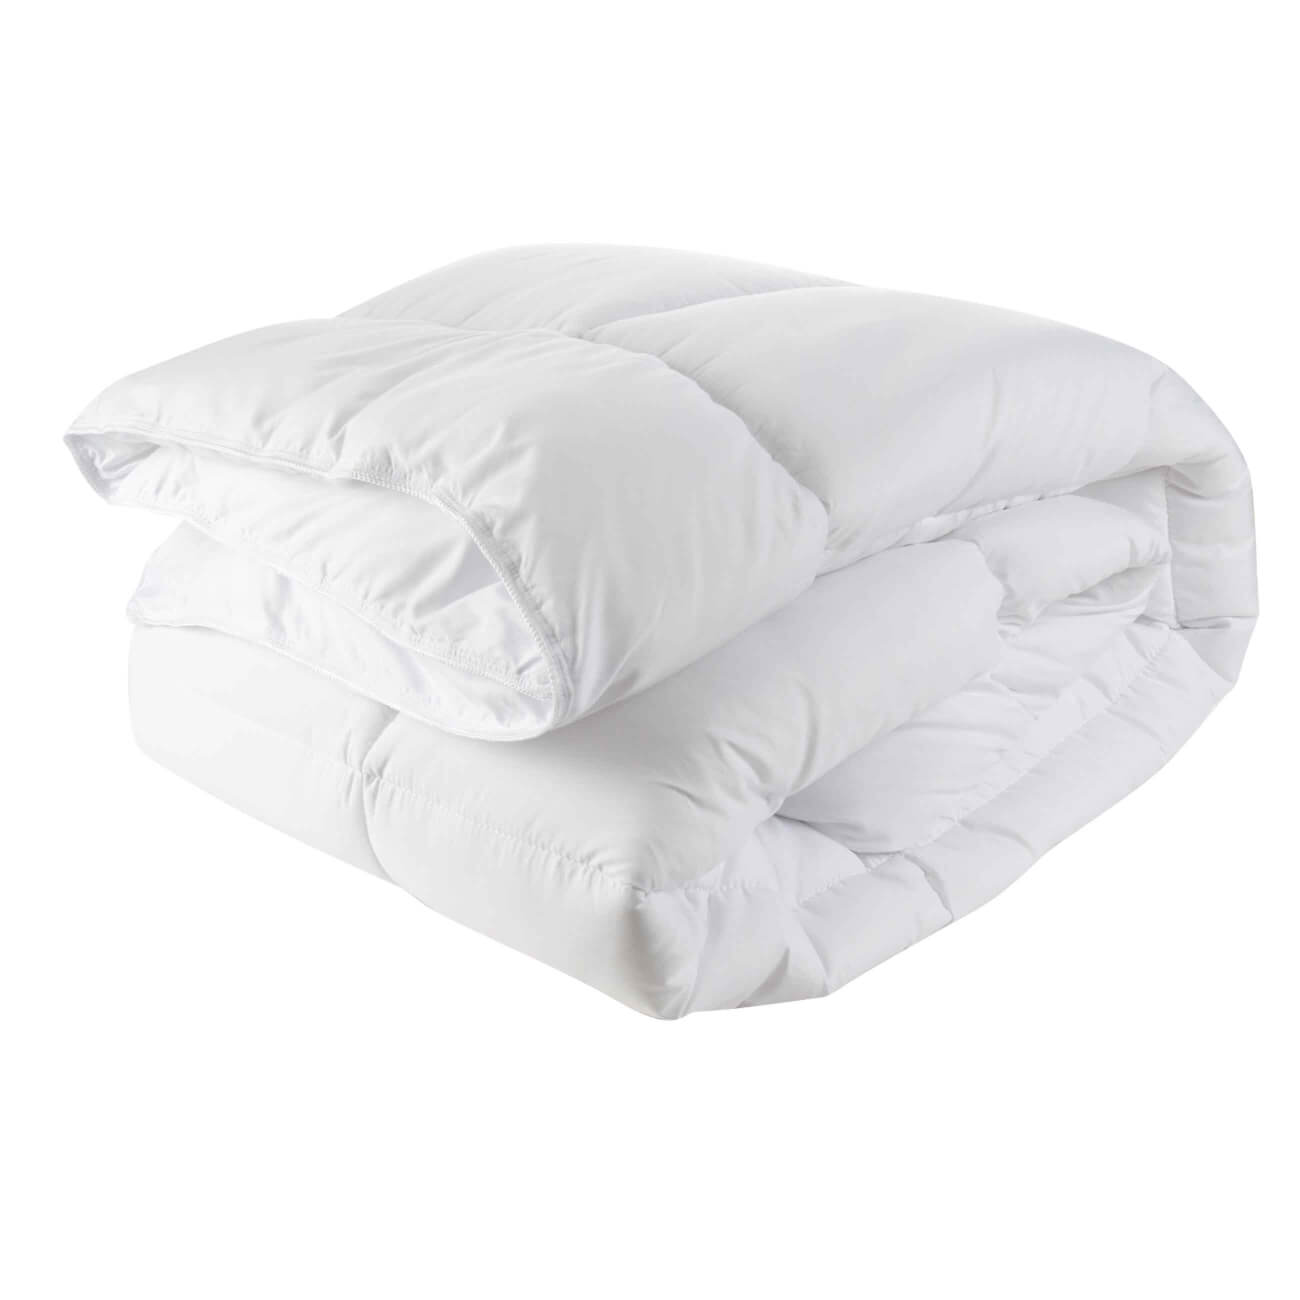 Одеяло, 200х220 см, микрофибра, Rest, Super soft